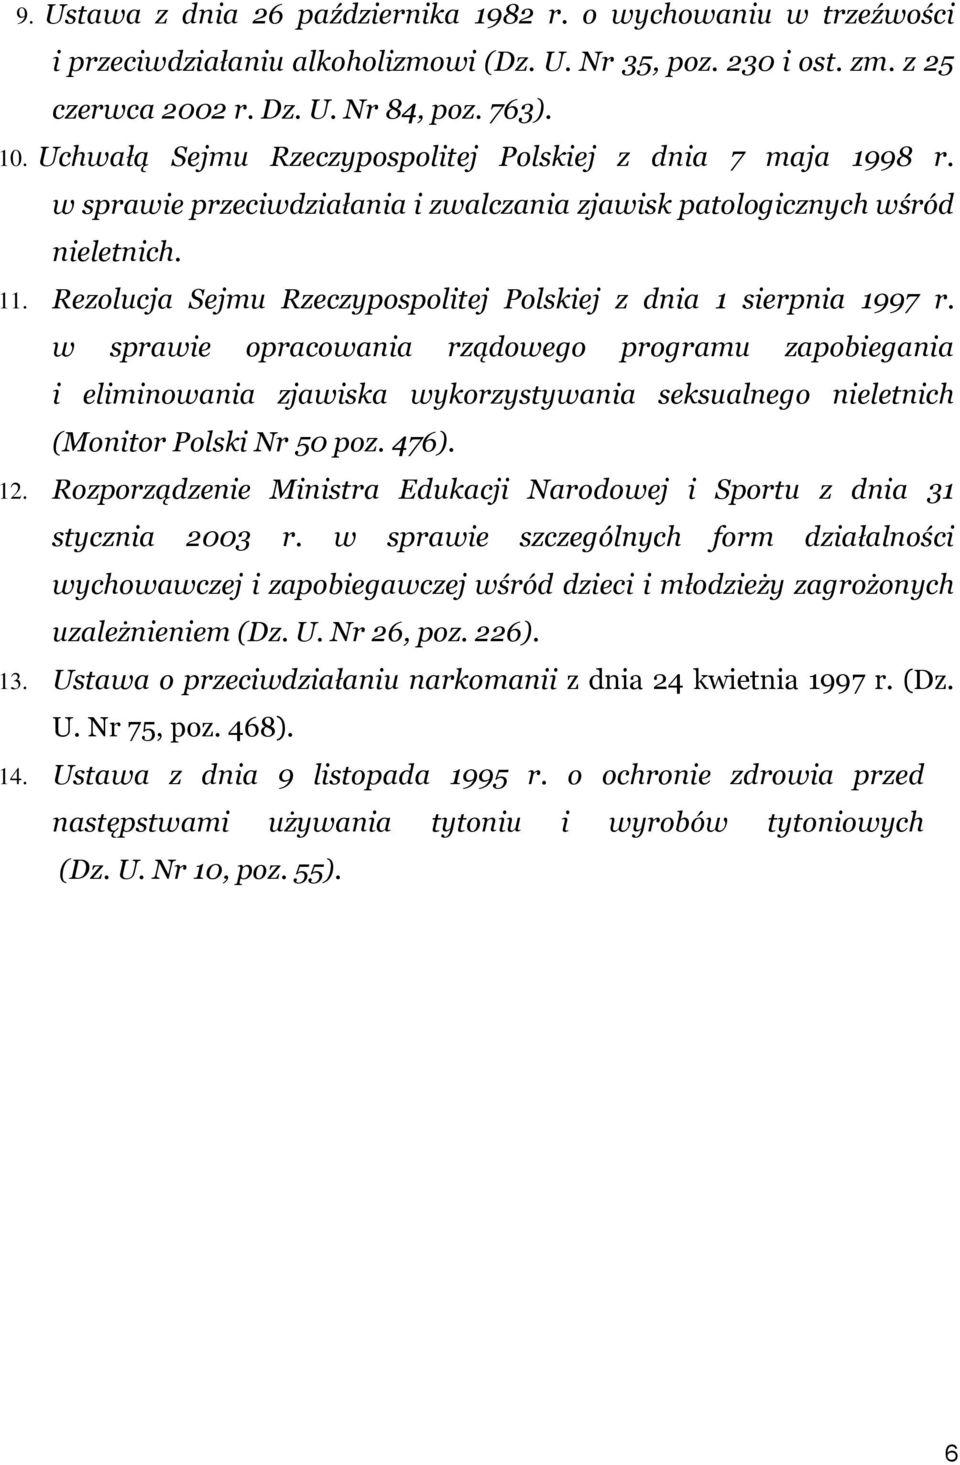 Rezolucja Sejmu Rzeczypospolitej Polskiej z dnia 1 sierpnia 1997 r.